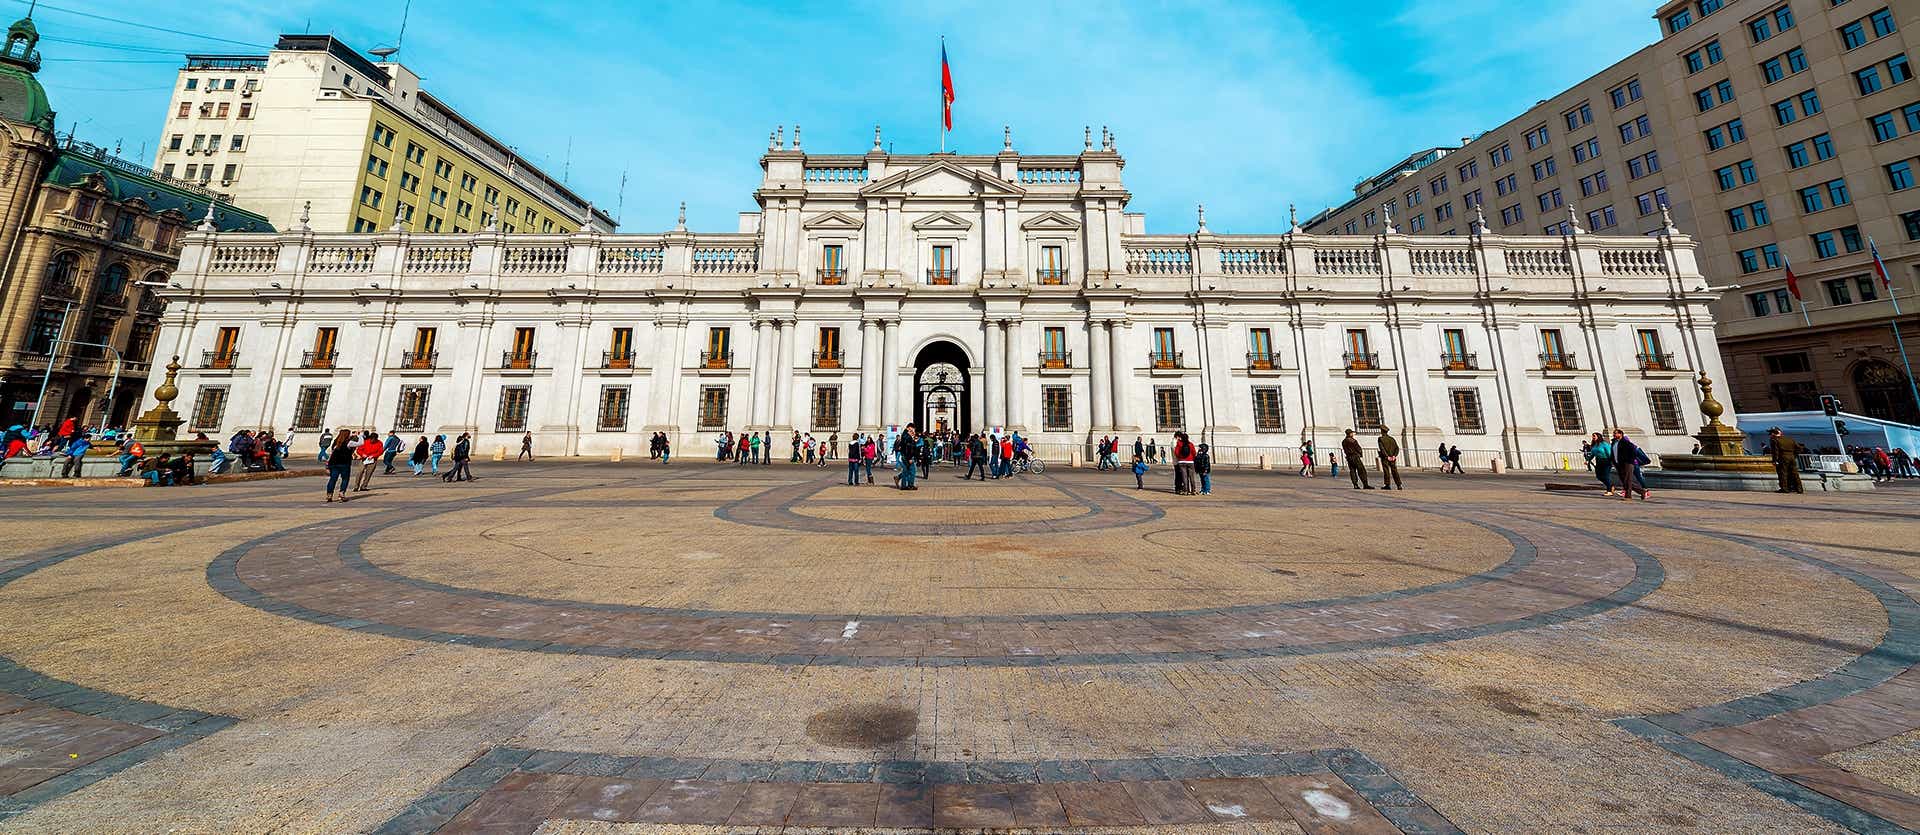 Palacio de La Moneda <span class="iconos separador"></span> Santiago <span class="iconos separador"></span> Chile